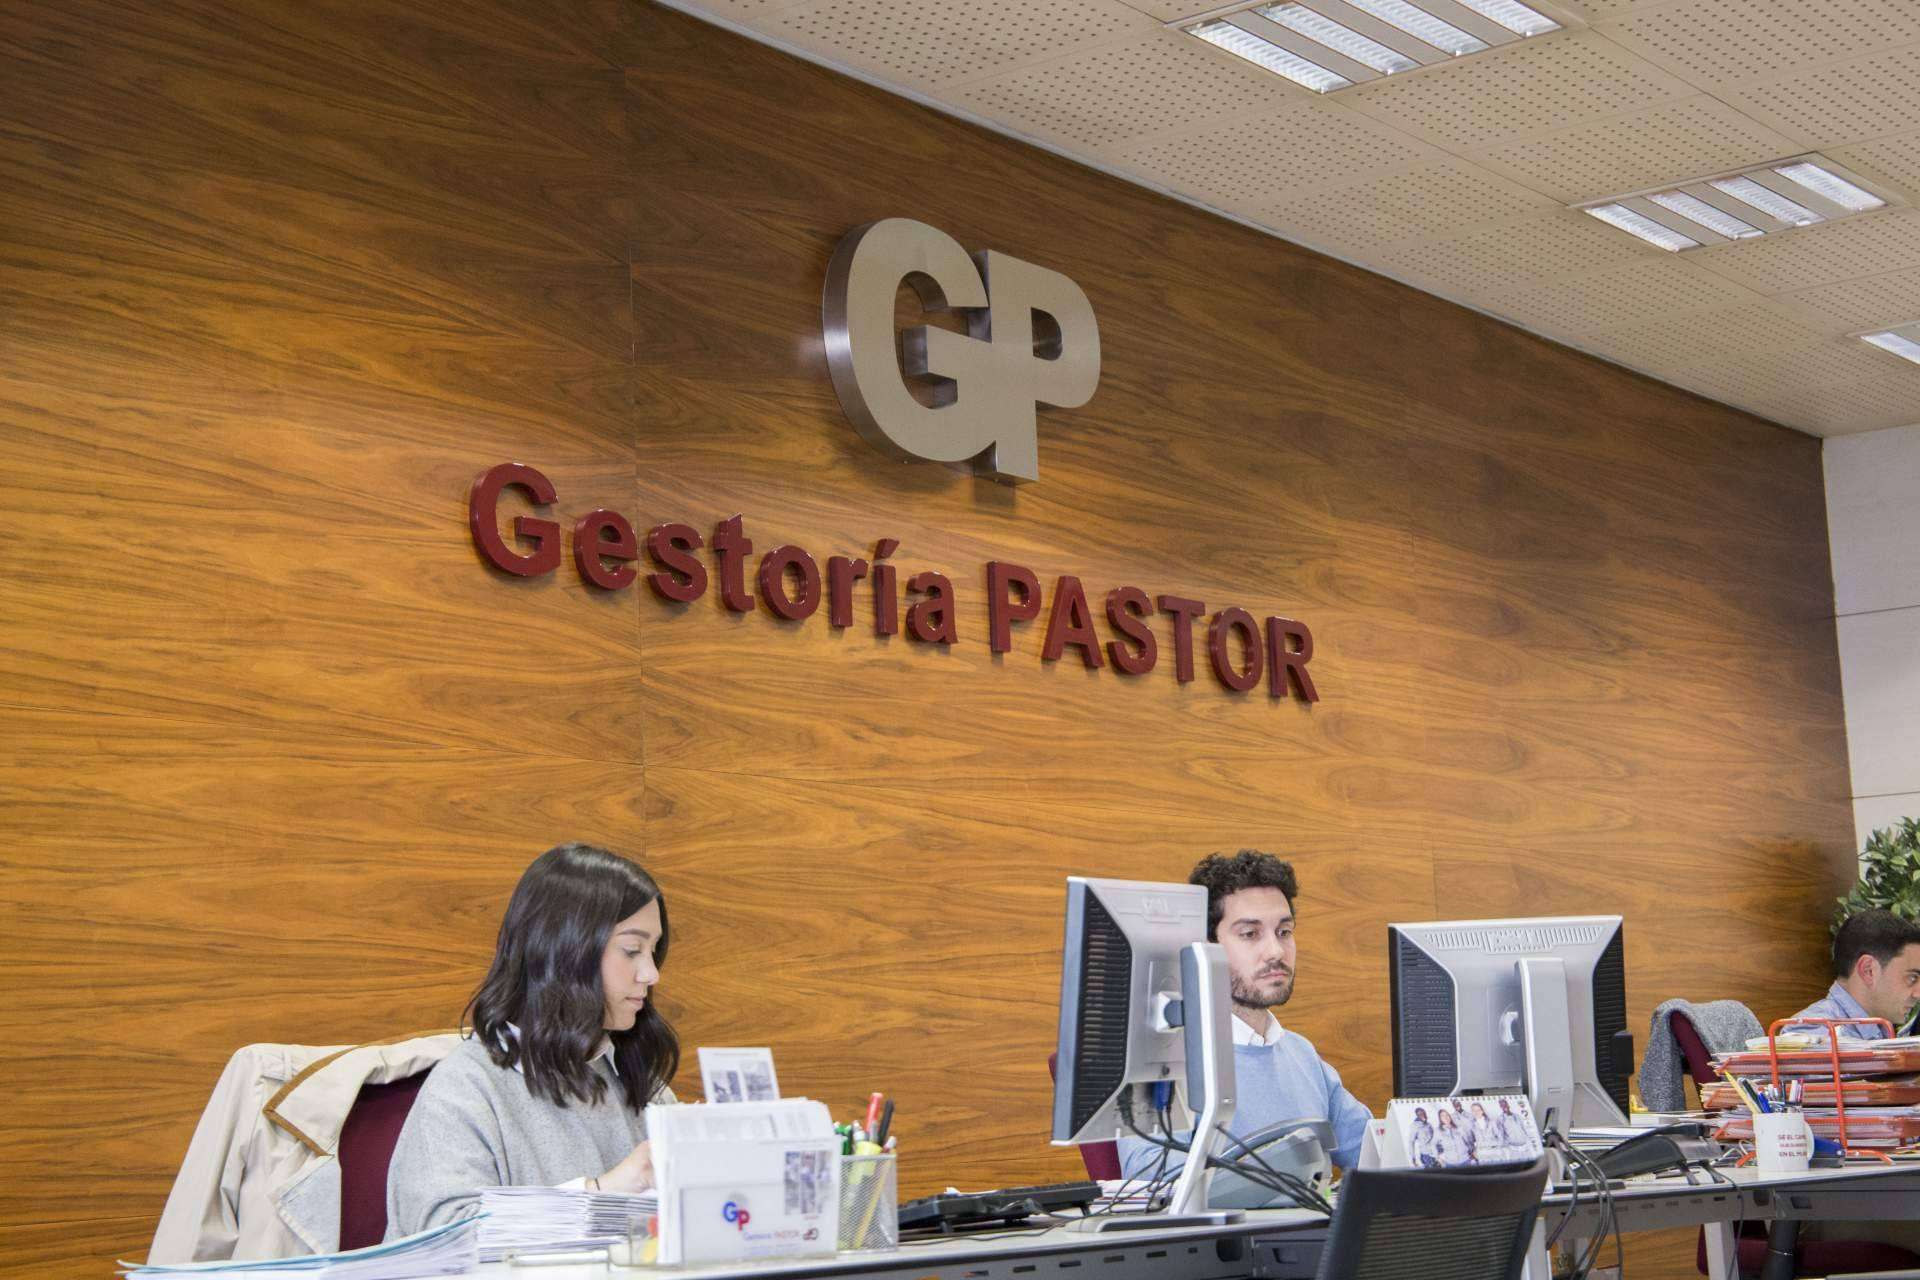 Grupo Gestoría Pastor, una gestoría situada en Valencia capital